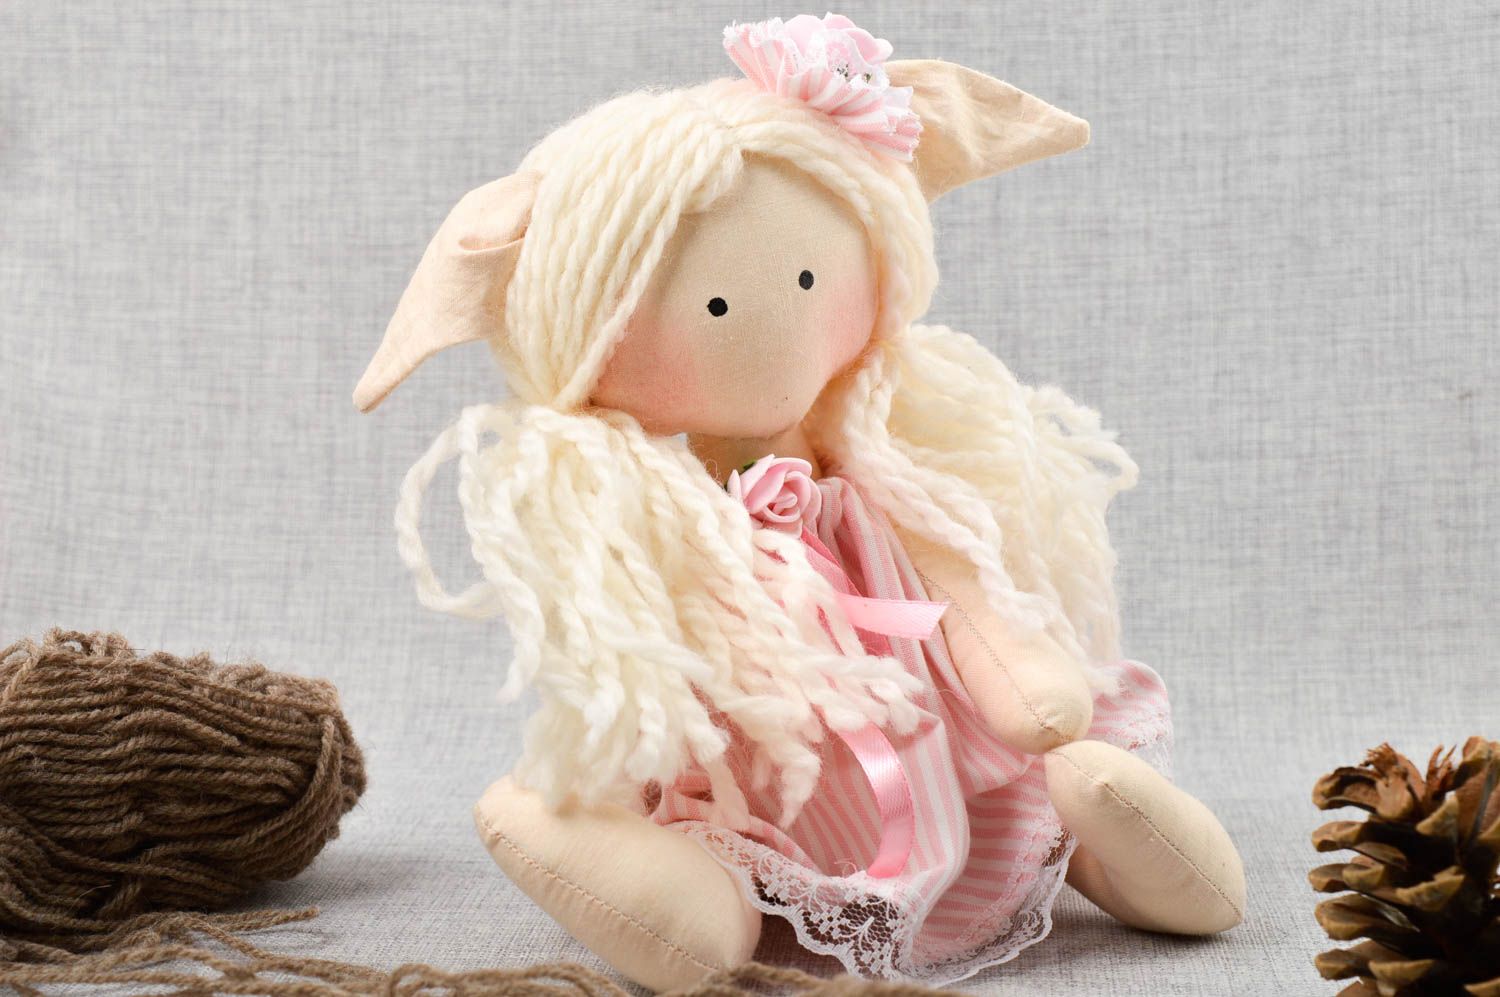 Кукла ручной работы кукла из ткани розовая мягкая кукла авторского дизайна фото 1